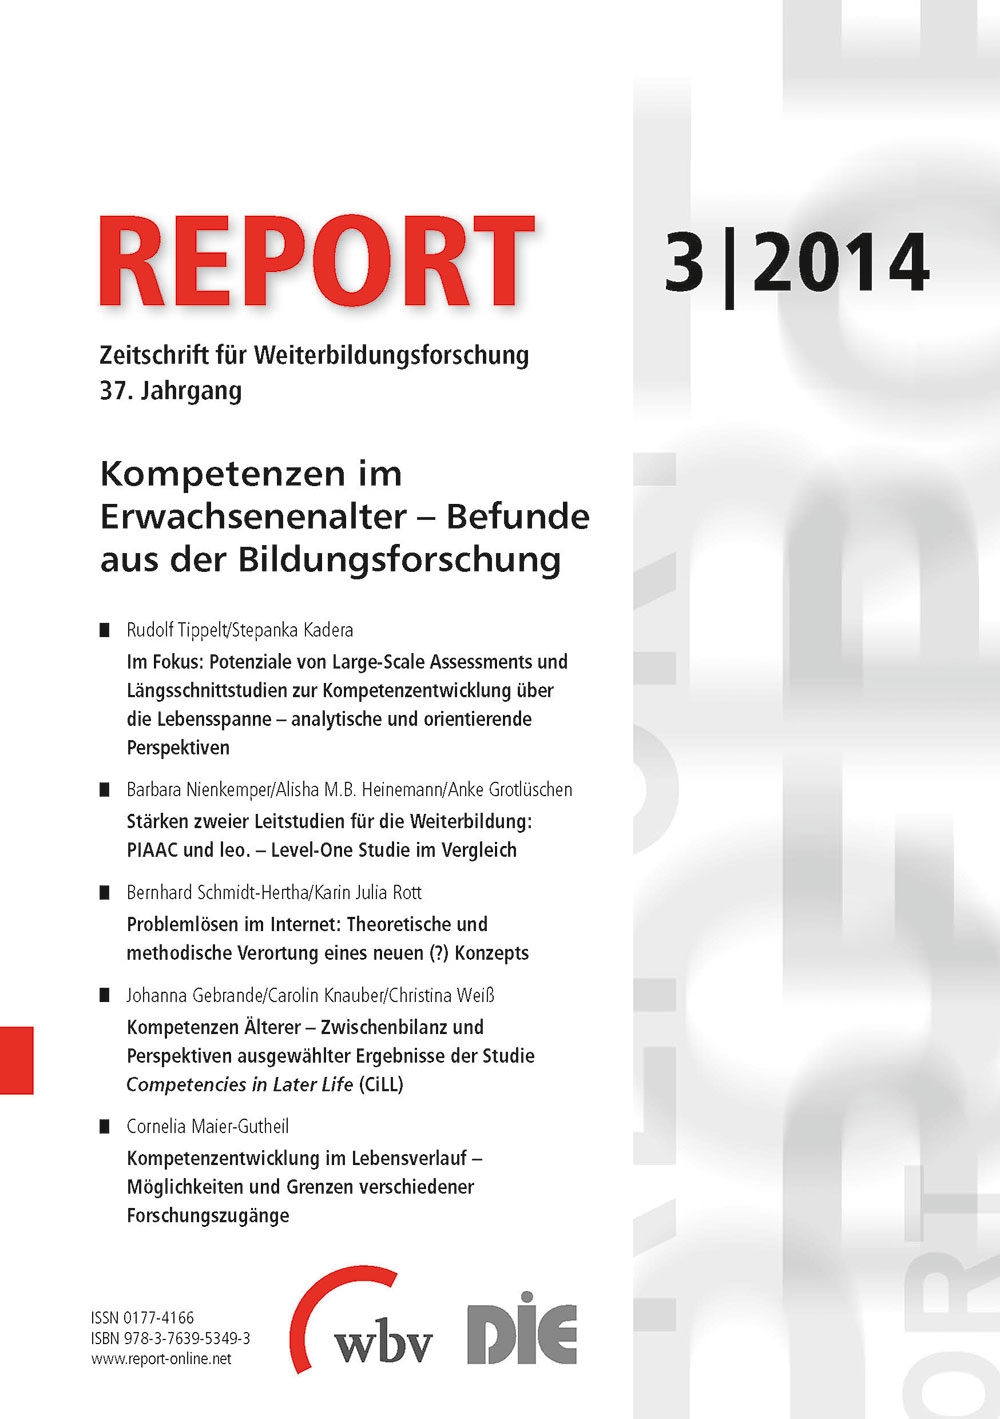 REPORT - Zeitschrift für Weiterbildungsforschung 03/2014